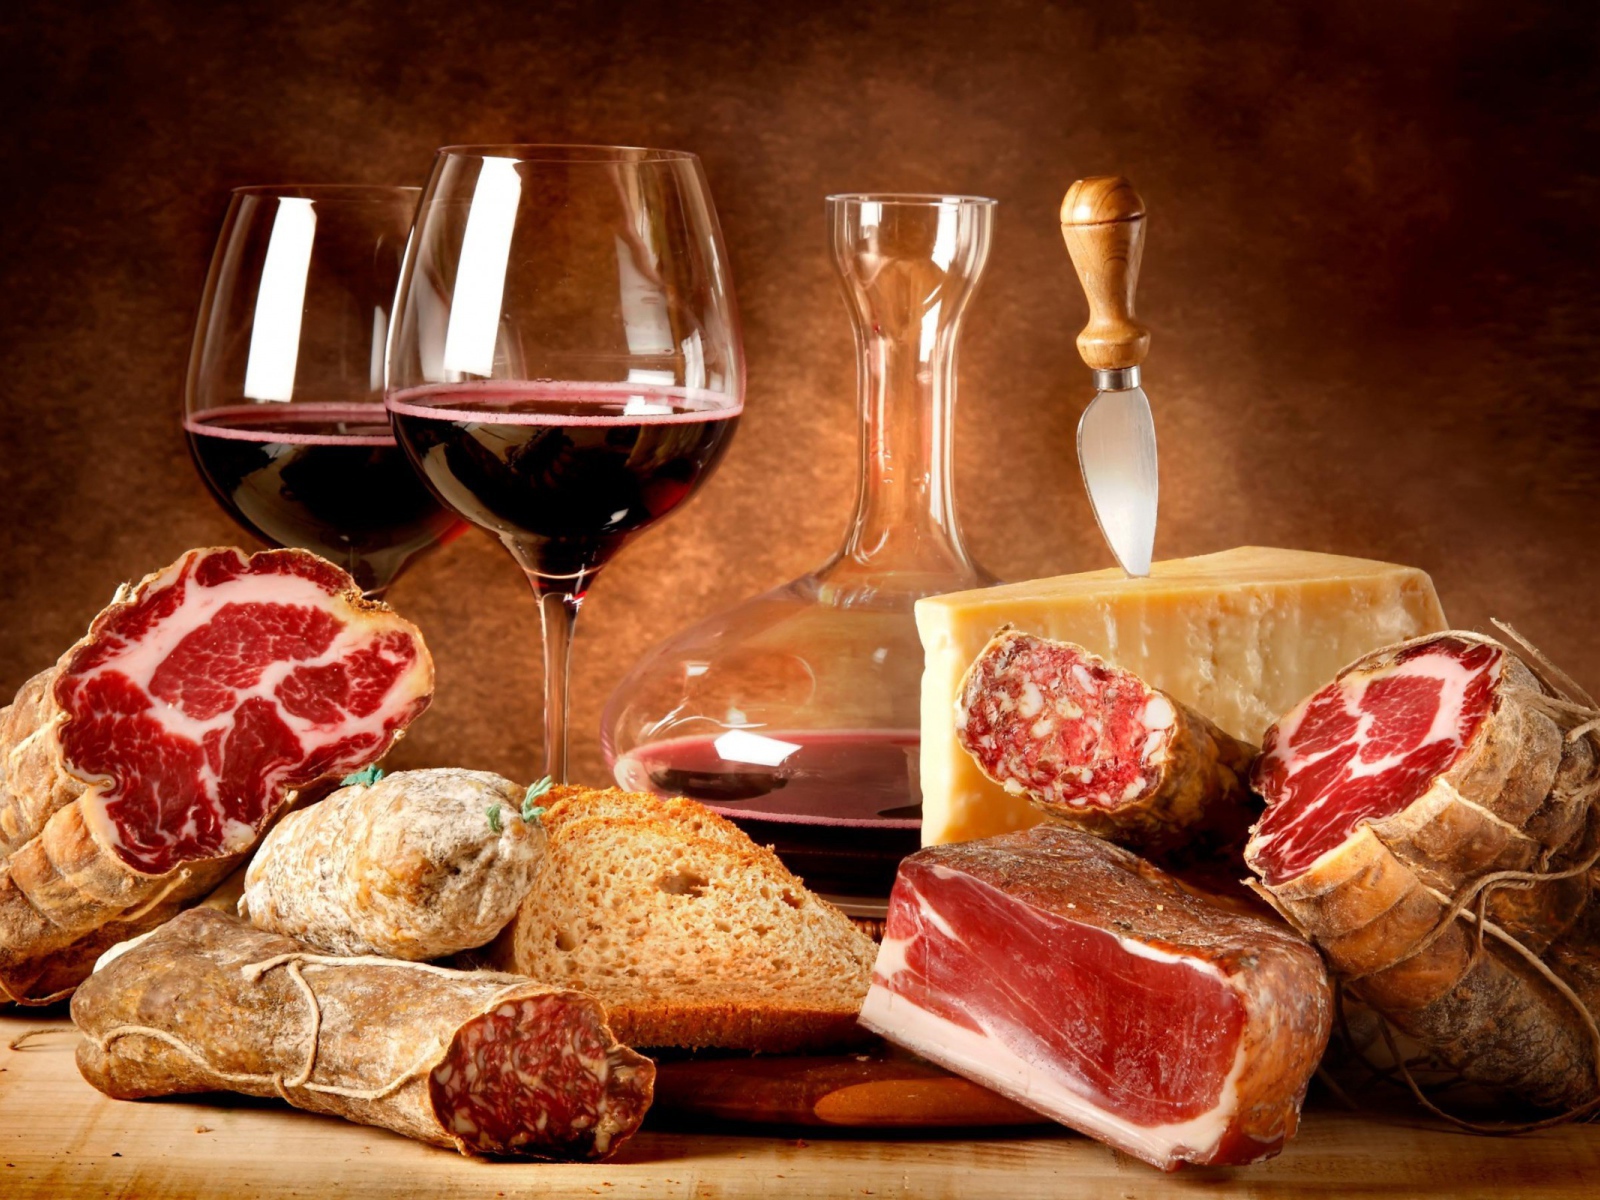 Мясные деликатесы и вино